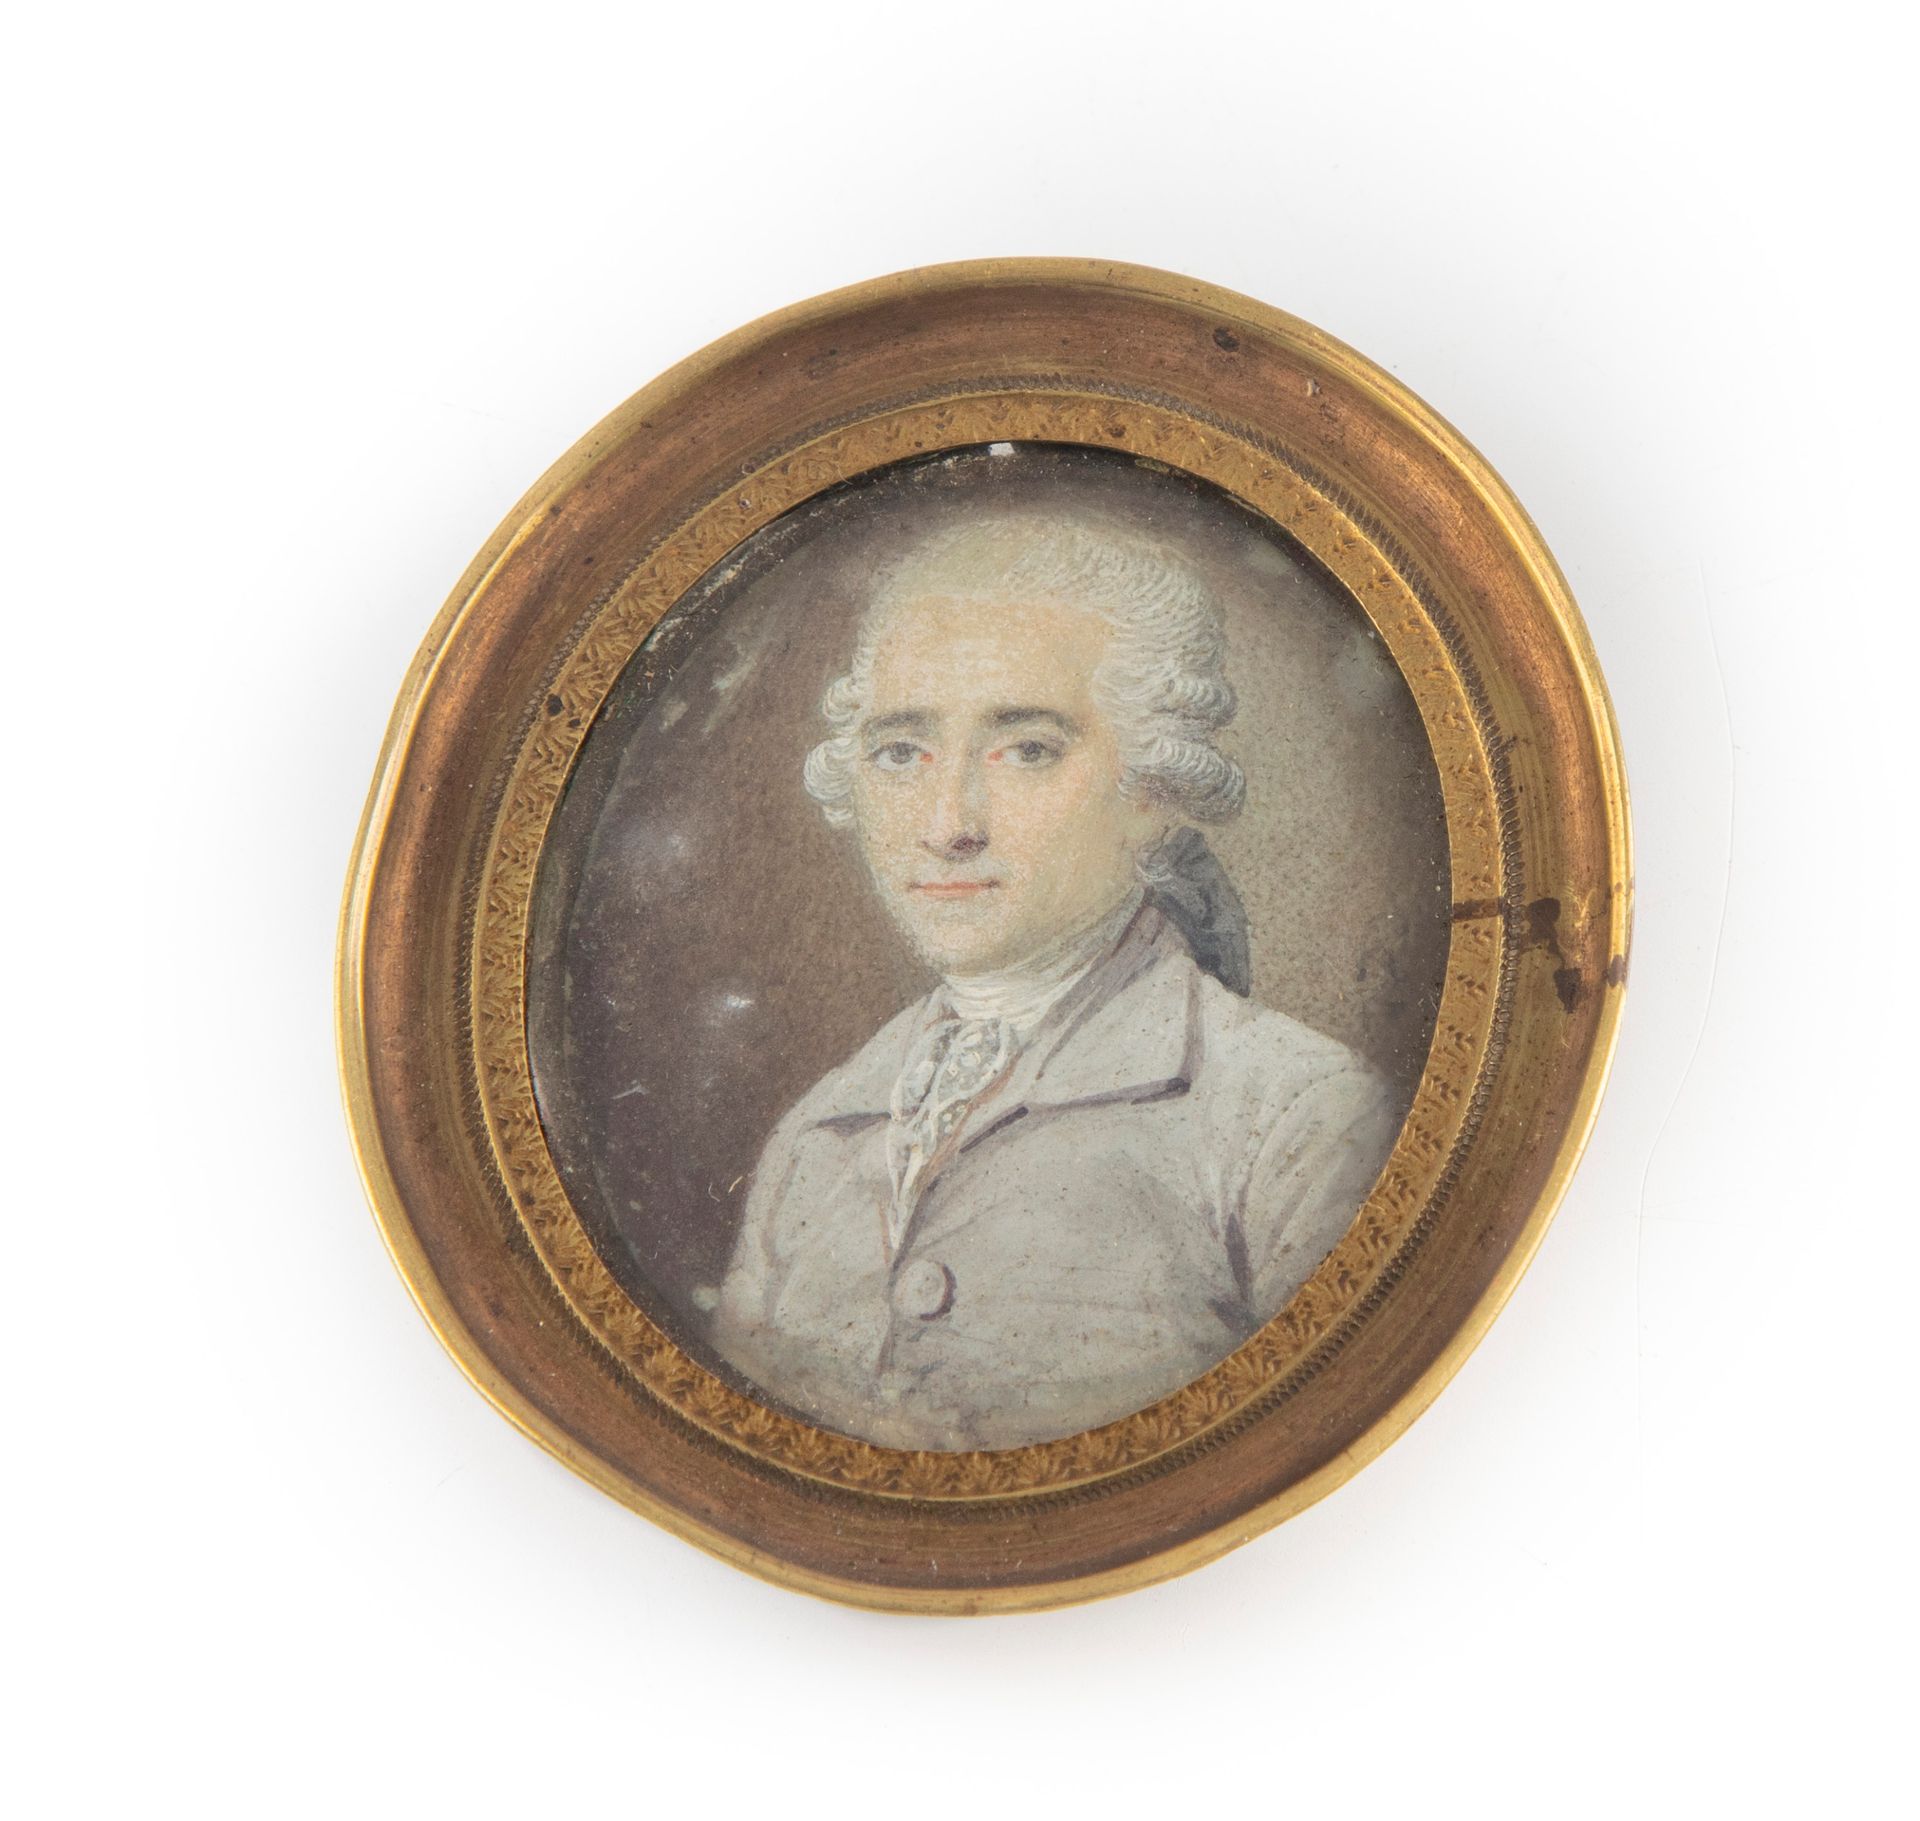 ECOLE FRANCAISE XVIIIè 18世纪法国学校

微型画，路易十六风格的男子肖像，椭圆形画框

H.5.5厘米